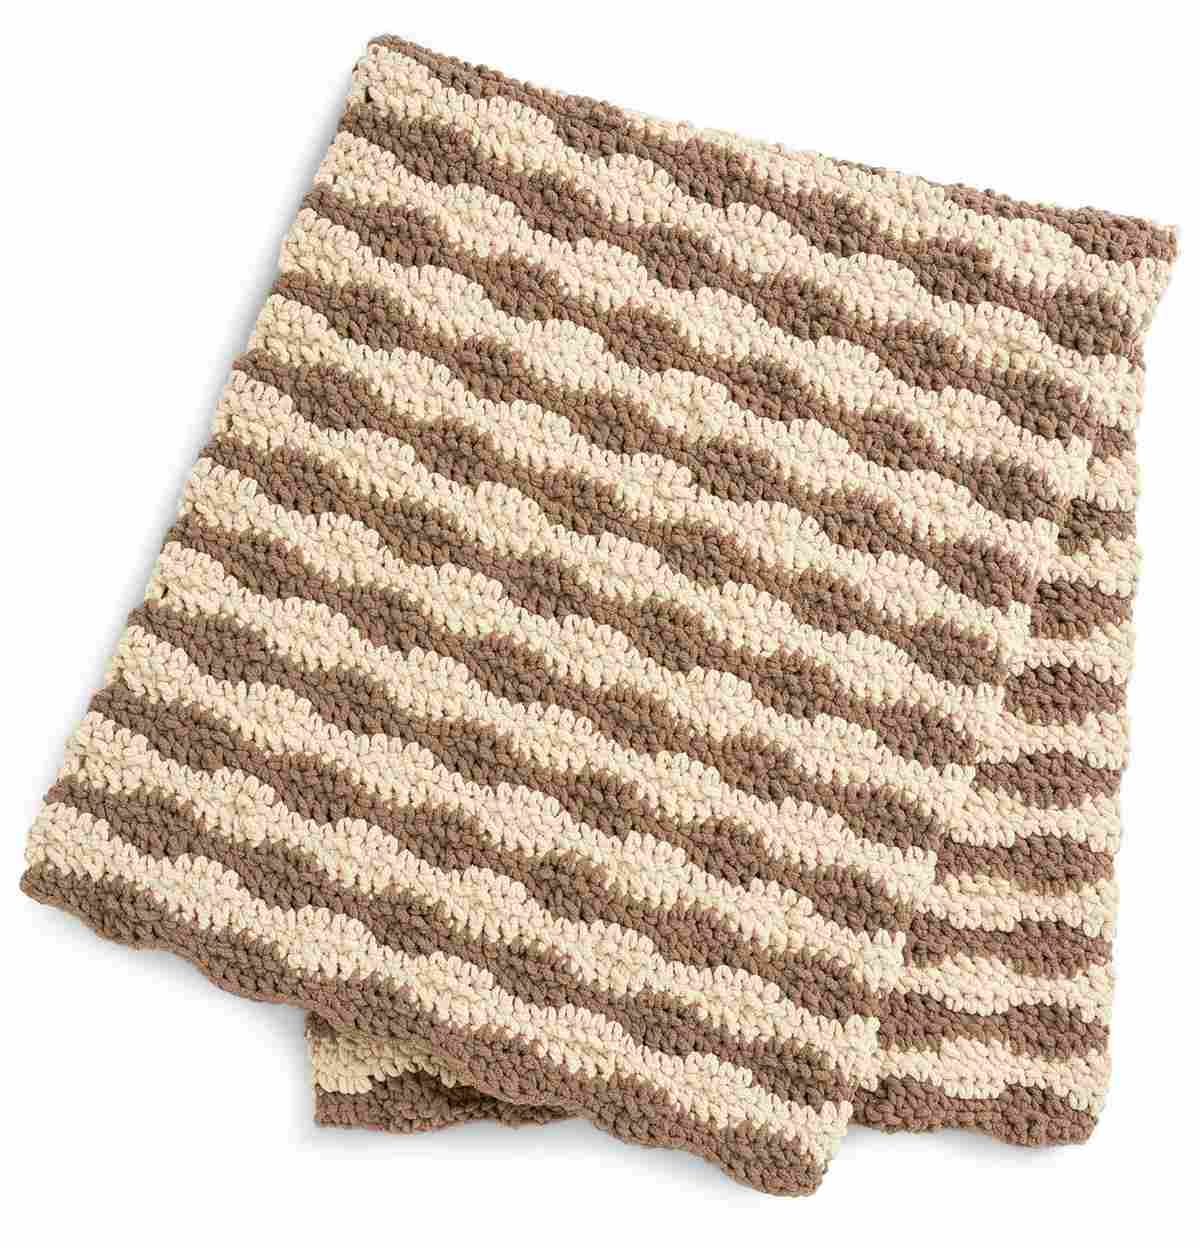 Calming Waves Crochet Blanket  - Free Crochet Pattern